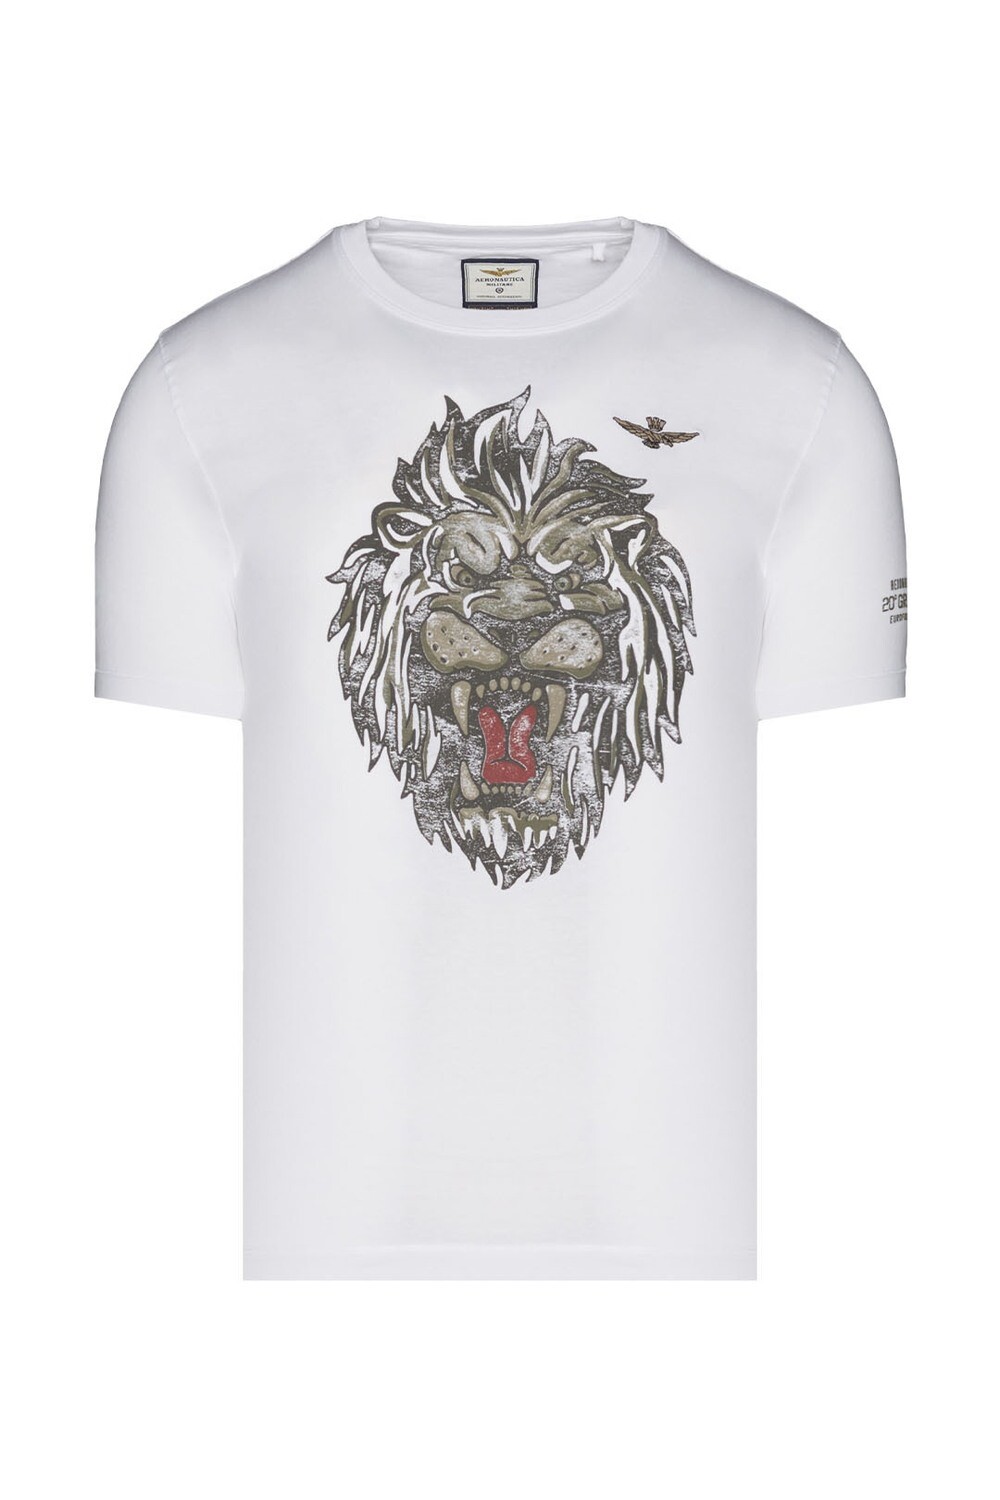 A. MILITARET-Shirt con stampa Leone del 20° Gruppo